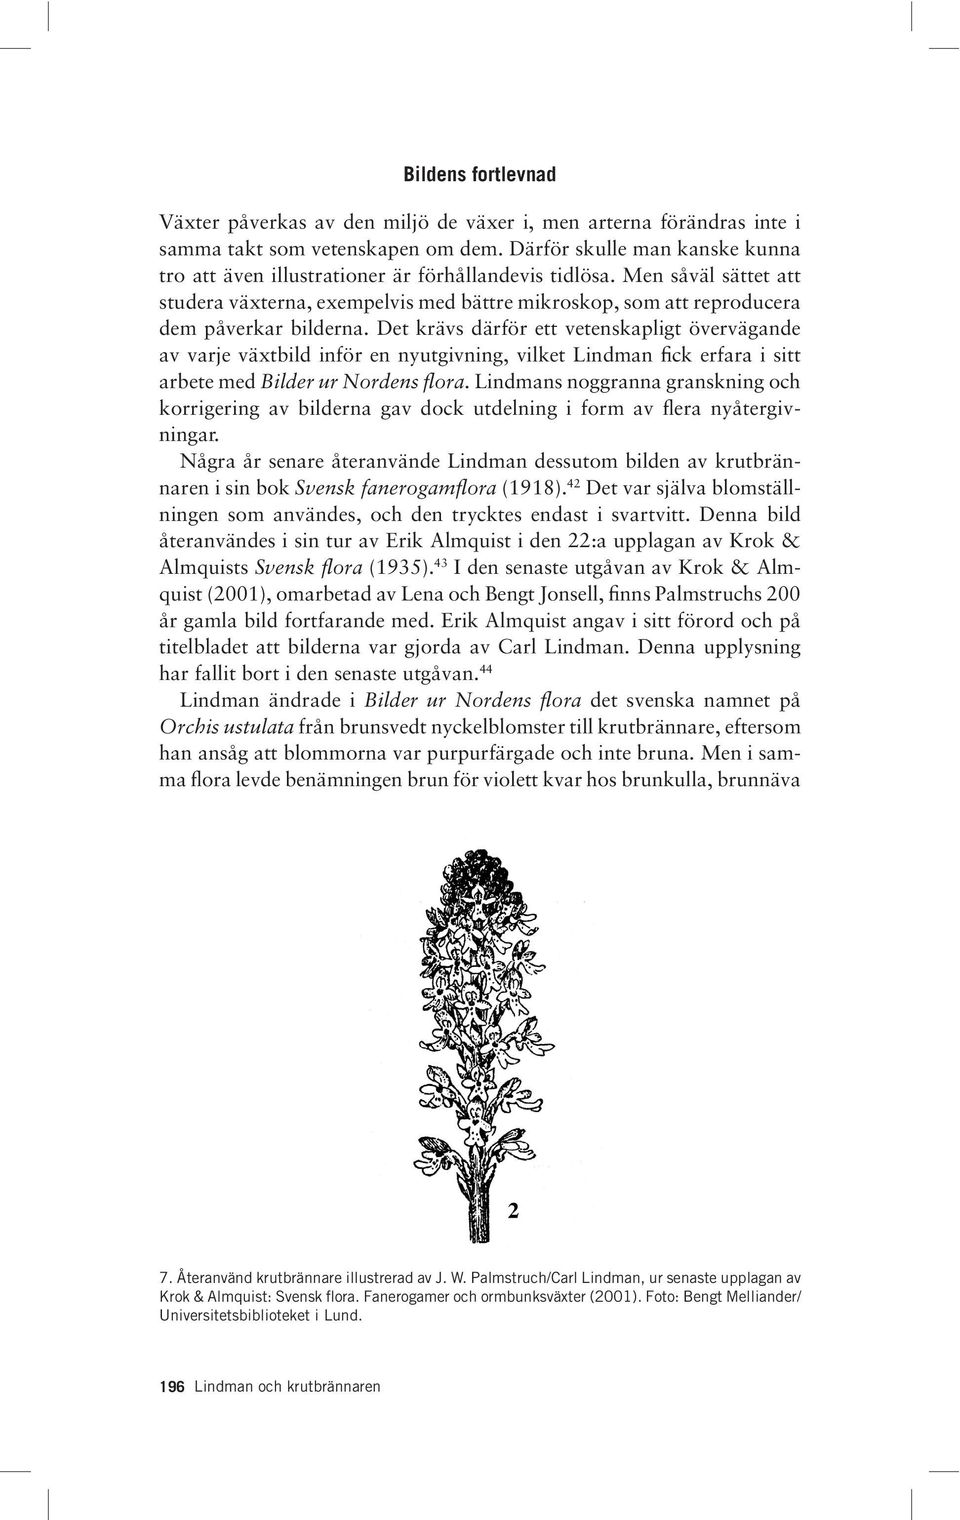 Det krävs därför ett vetenskapligt övervägande av varje växtbild inför en nyutgivning, vilket Lindman fick erfara i sitt arbete med Bilder ur Nordens flora.